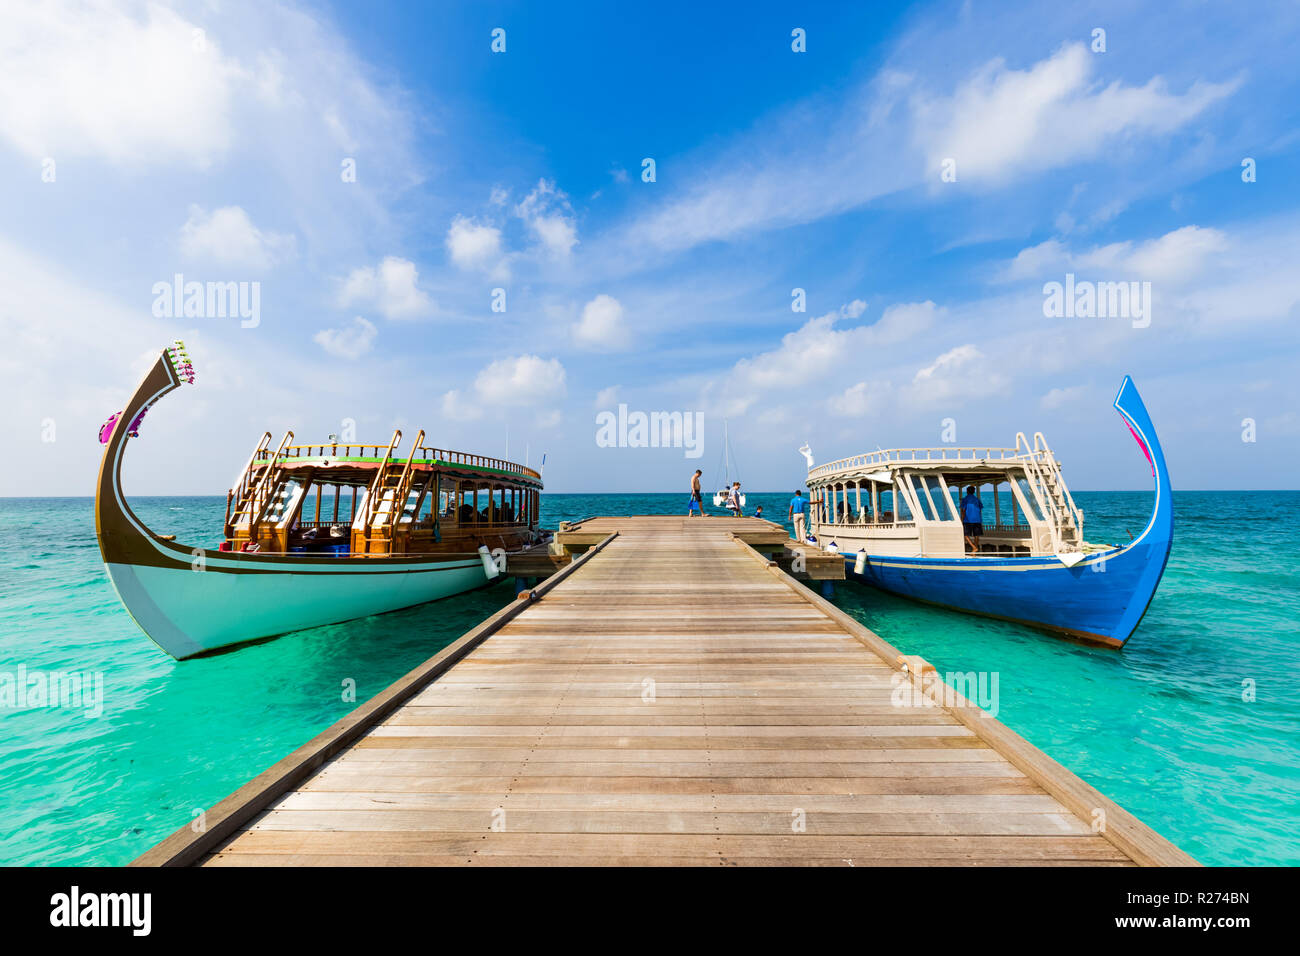 Atollo di Ari, Maldive: 14.12.2016 - Vista di un Dhoni, una tradizionale barca di pesca in legno Maldiviano sull'acqua, snorkeling e immersioni Foto Stock